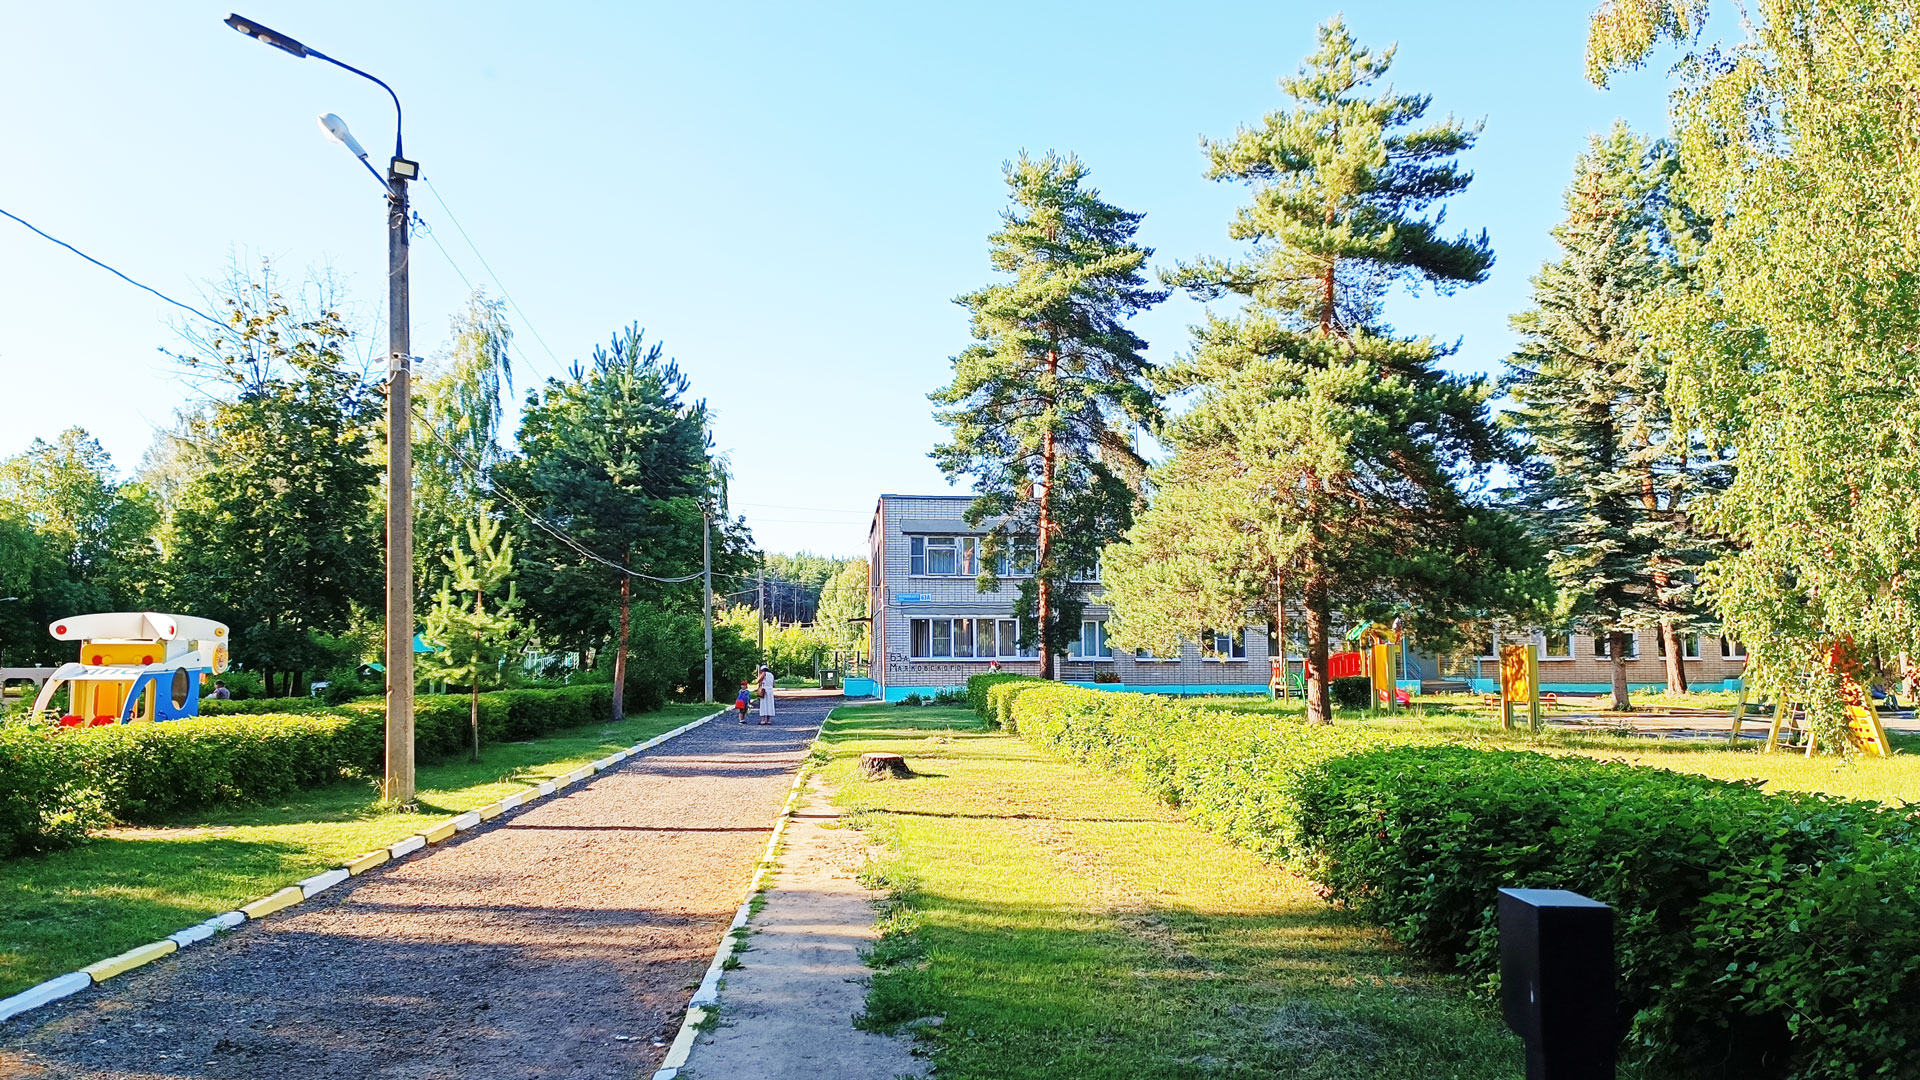 Детский сад 52 Ярославль: общий вид здания.